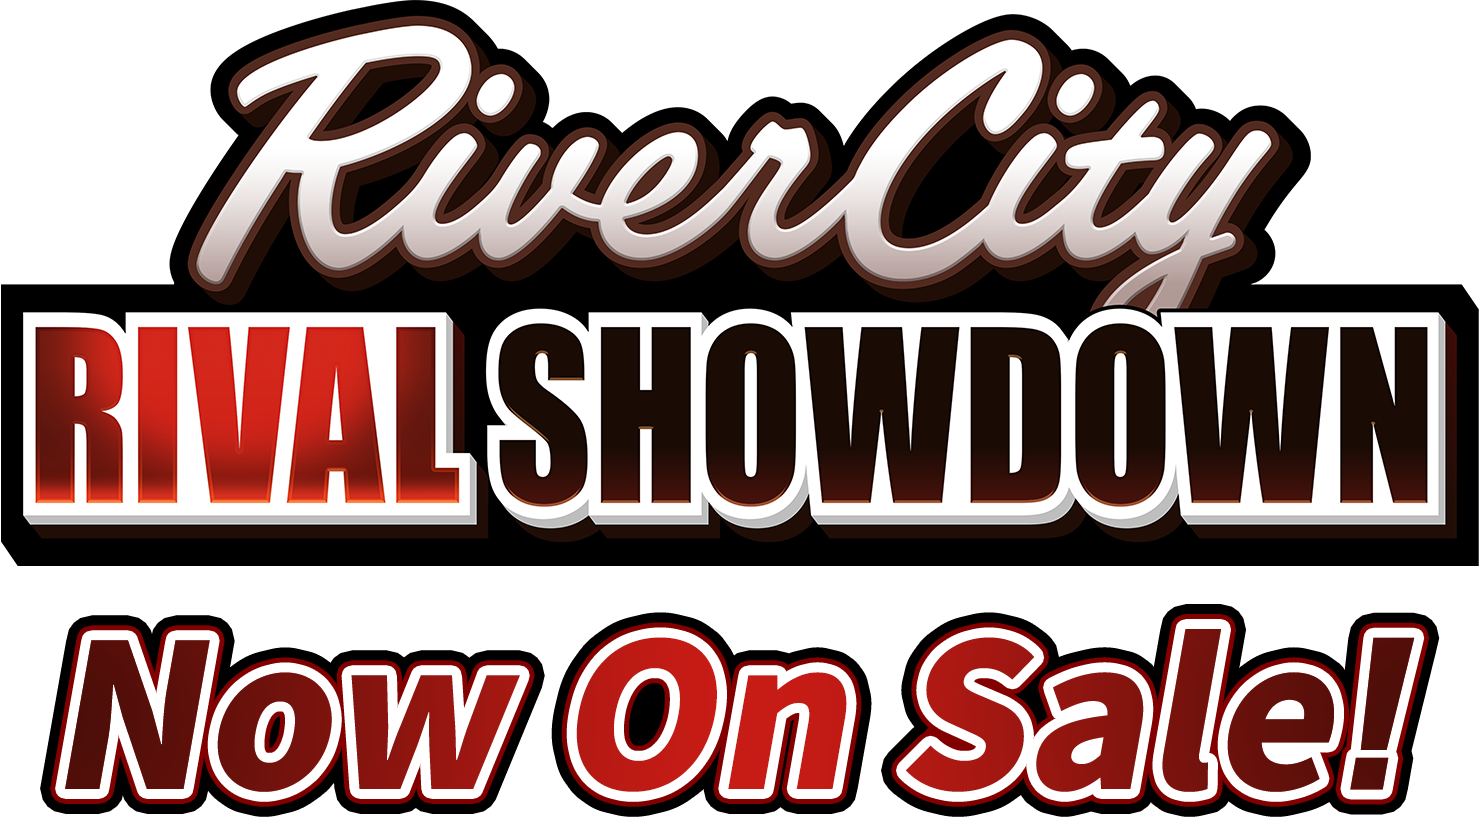 River City: Rival Showdown On sale 10-12-23!